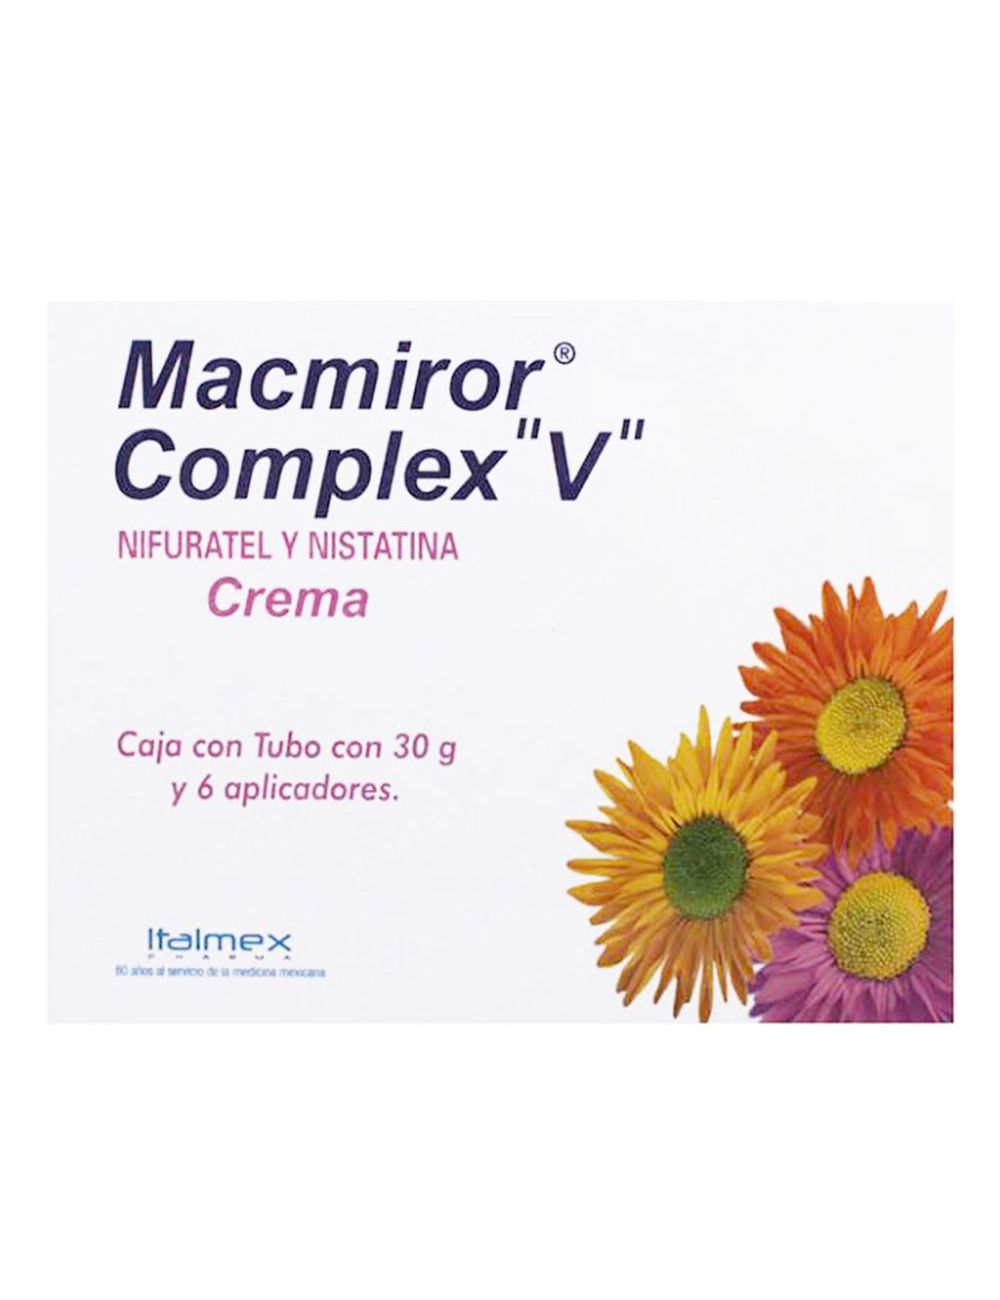 Macmiror Complex Crema Caja Con Tubo 30 g Y 6 Aplicadores